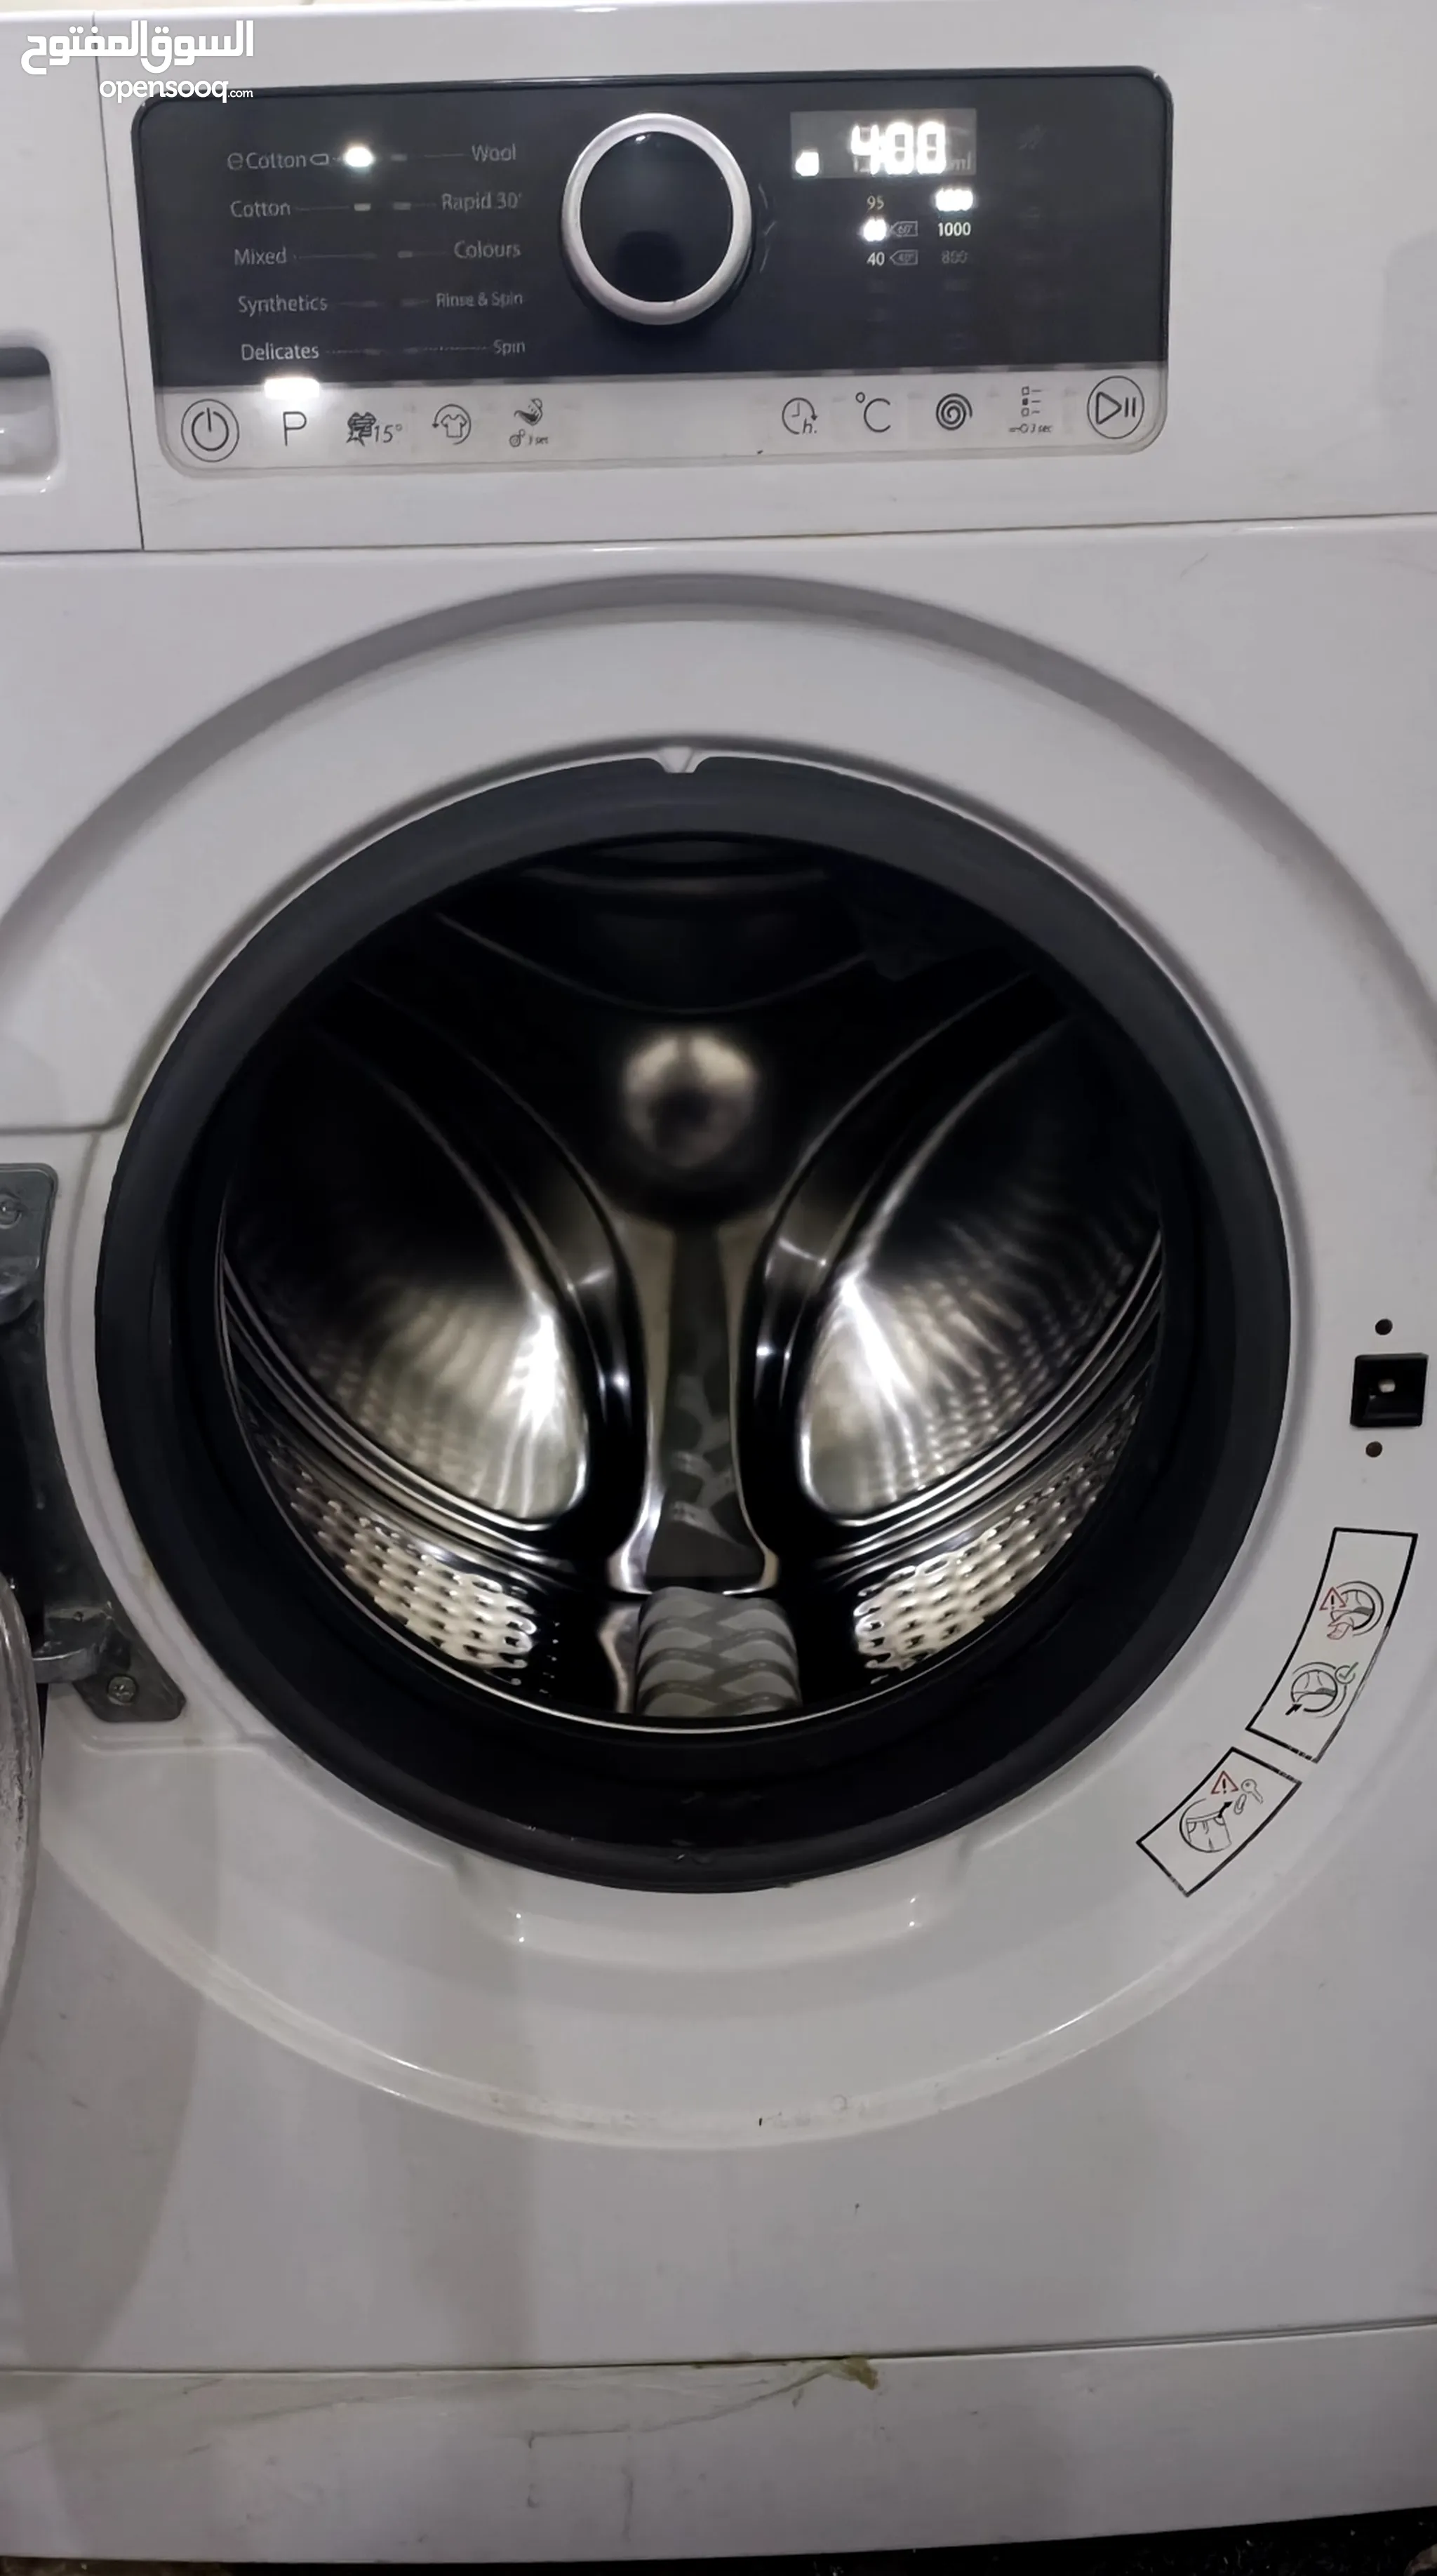 Electronics Washing Machines - Dryers : Washing Machines : (Page 4) : Kuwait